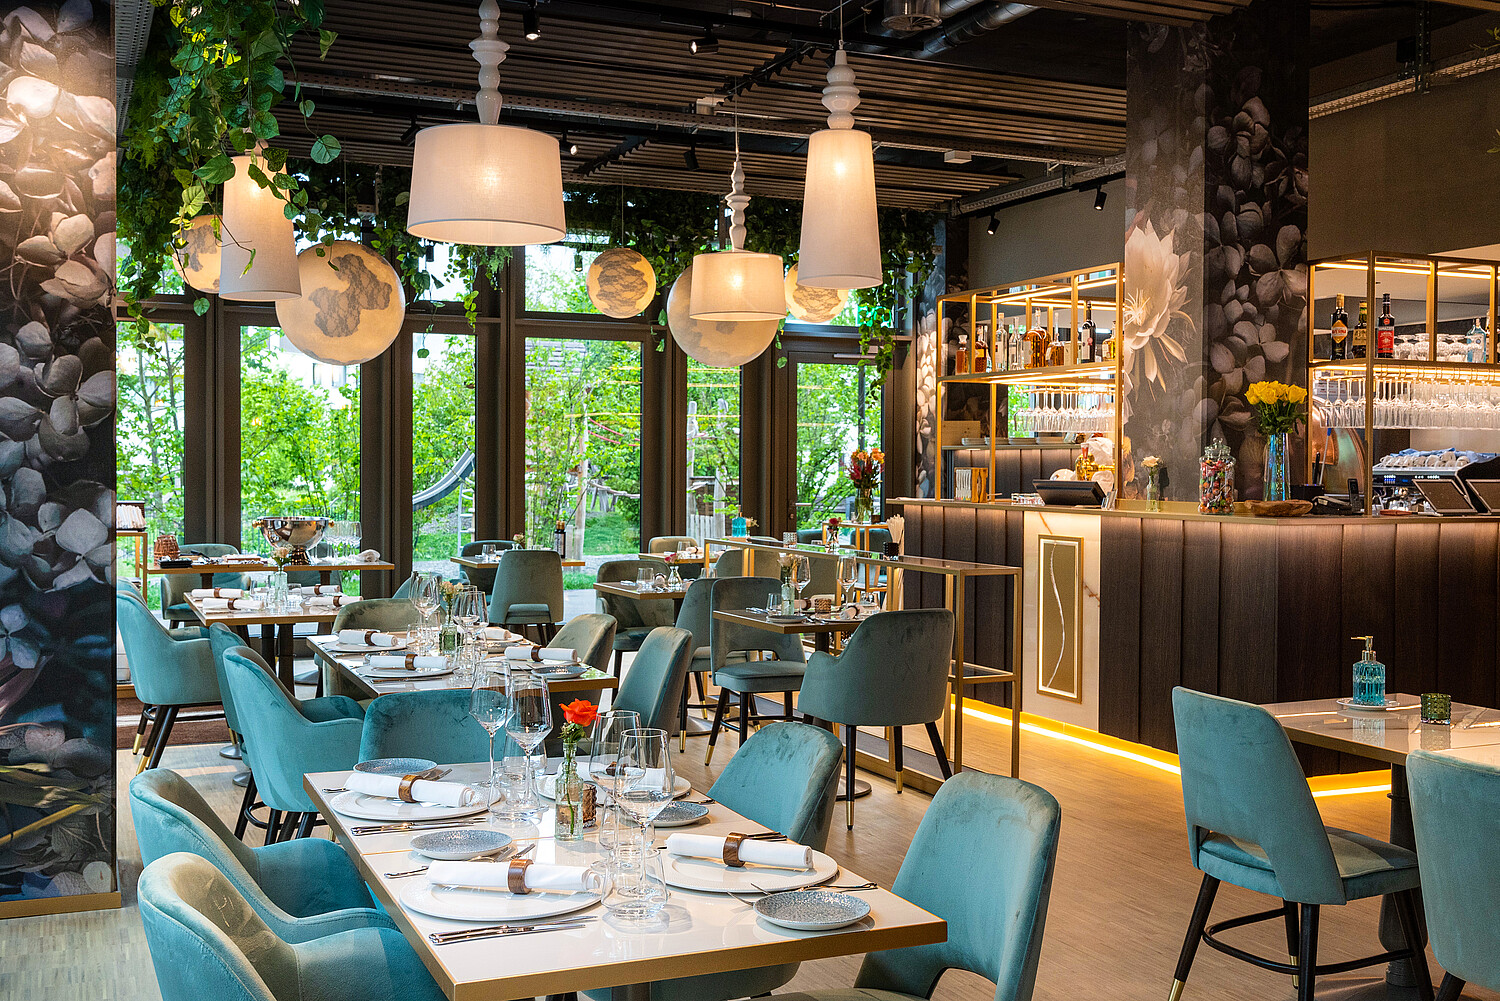 Das Sapori’s ist eines von drei Restaurants in der Suurstoffi in Rotkreuz, ein stilvoller Treffpunkt, eingebettet in ein zukunftsträchtiges Areal, das Wohnen, Arbeiten, Freizeit und Genuss geschickt kombiniert.